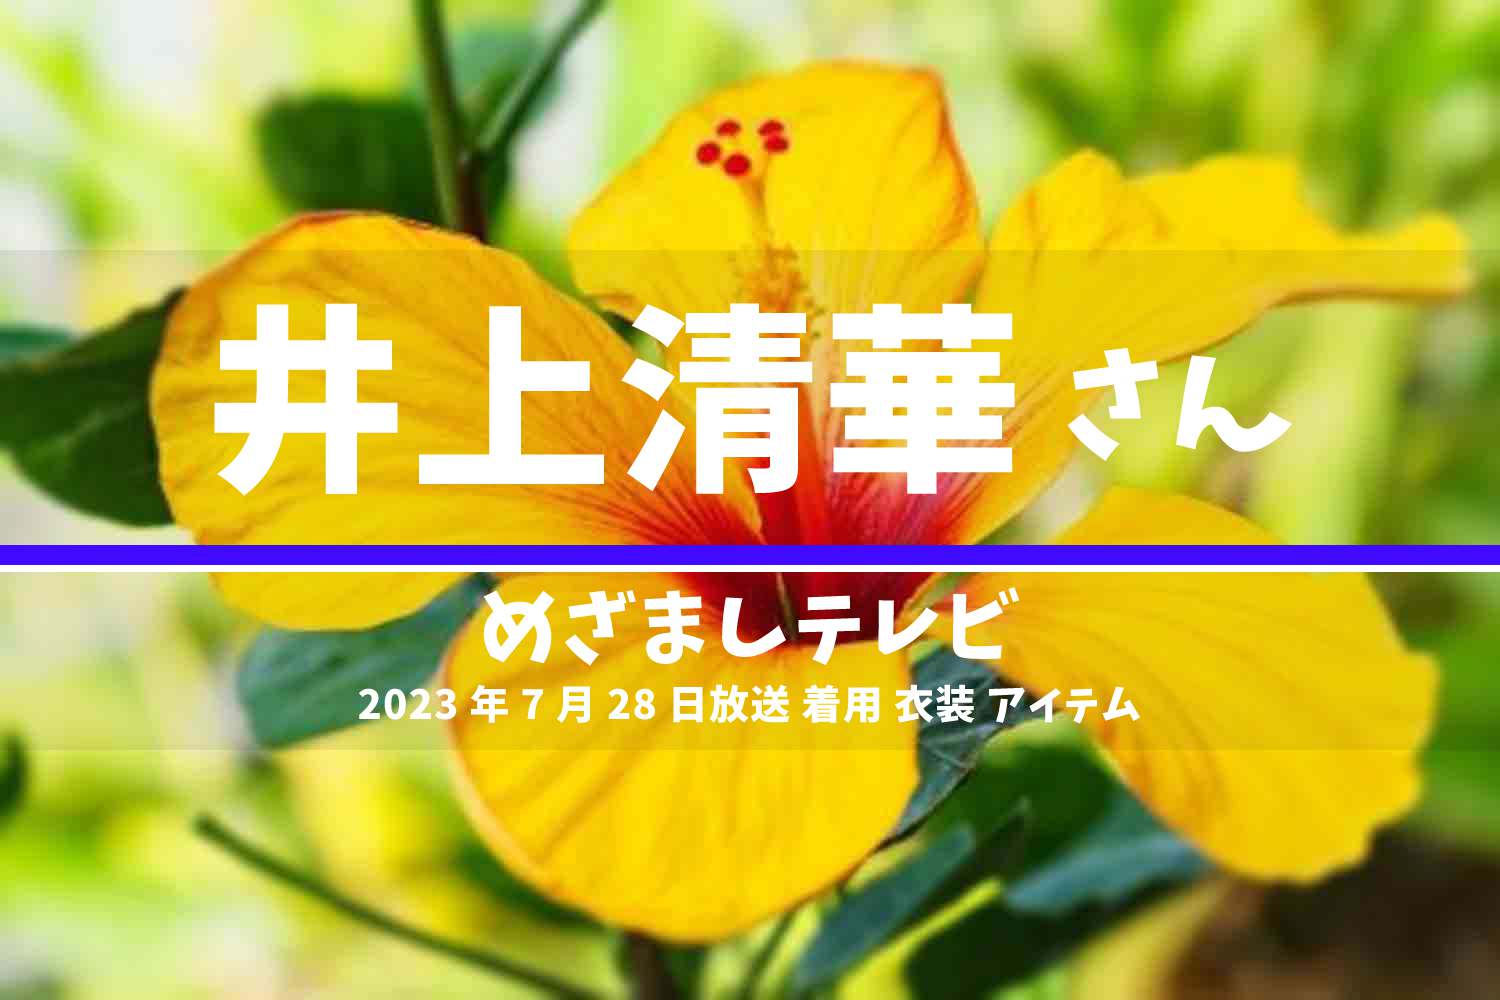 めざましテレビ 井上清華さん 番組 衣装 2023年7月28日放送